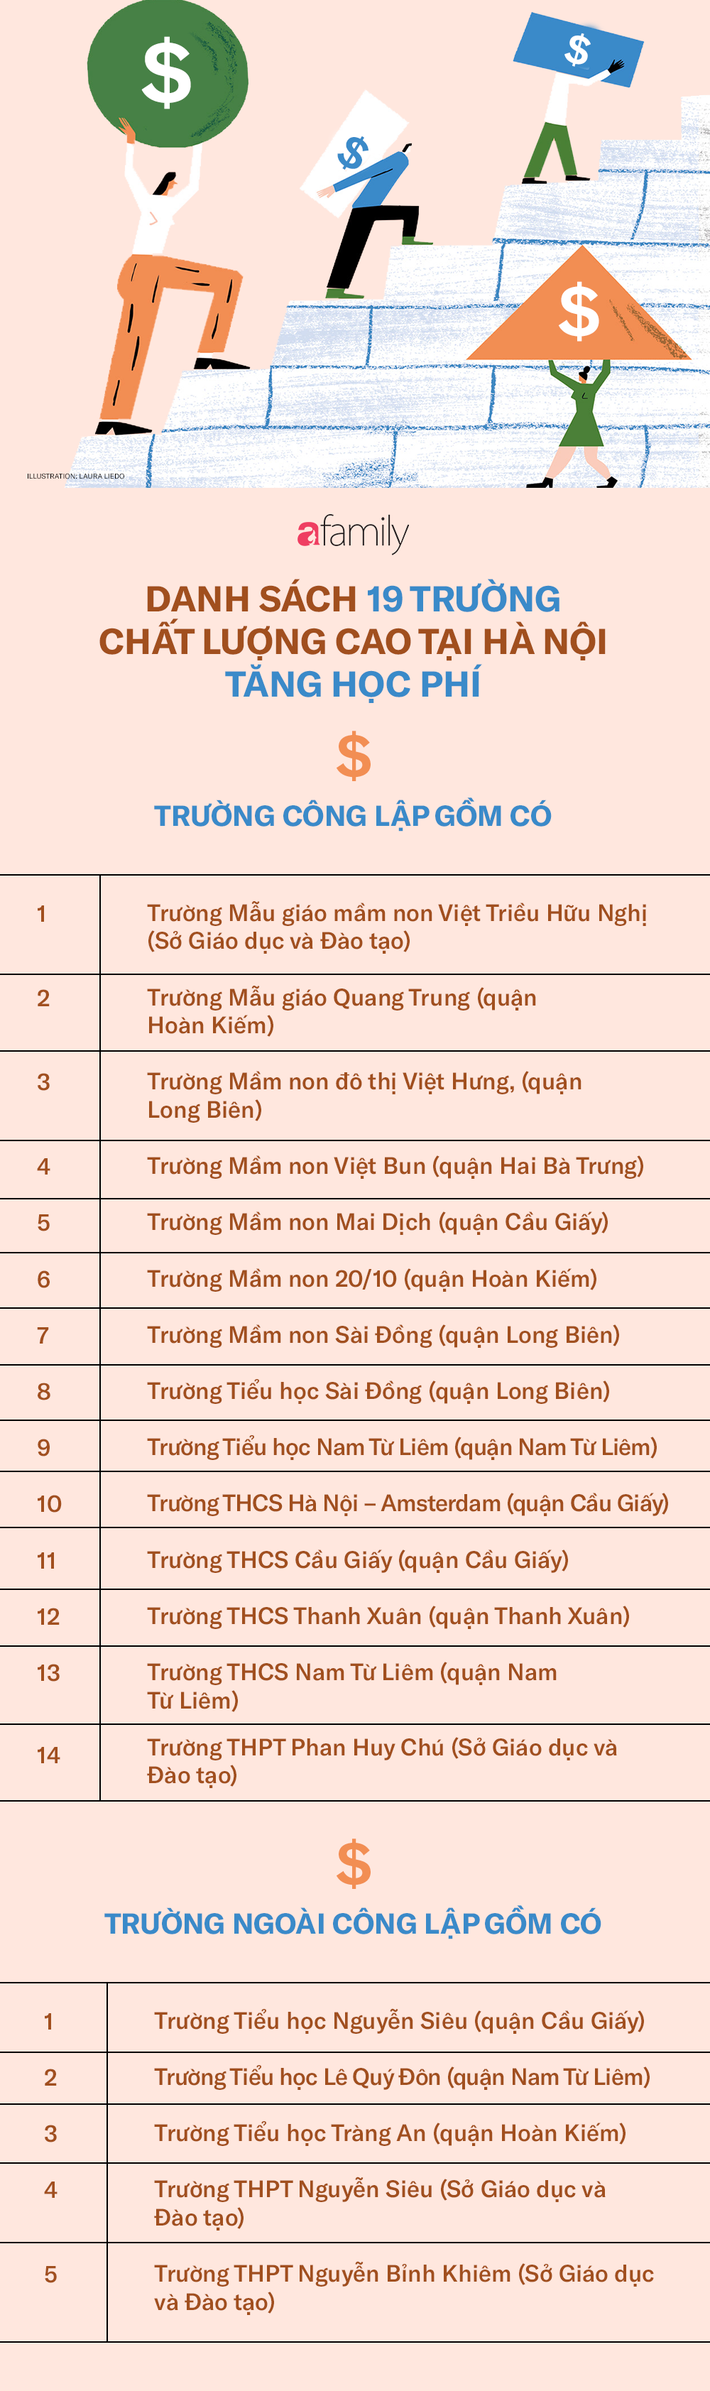 Đề xuất tăng mức trần học phí cho 19 trường chất lượng cao tại Hà Nội, vậy những trường đó là trường nào? - Ảnh 2.